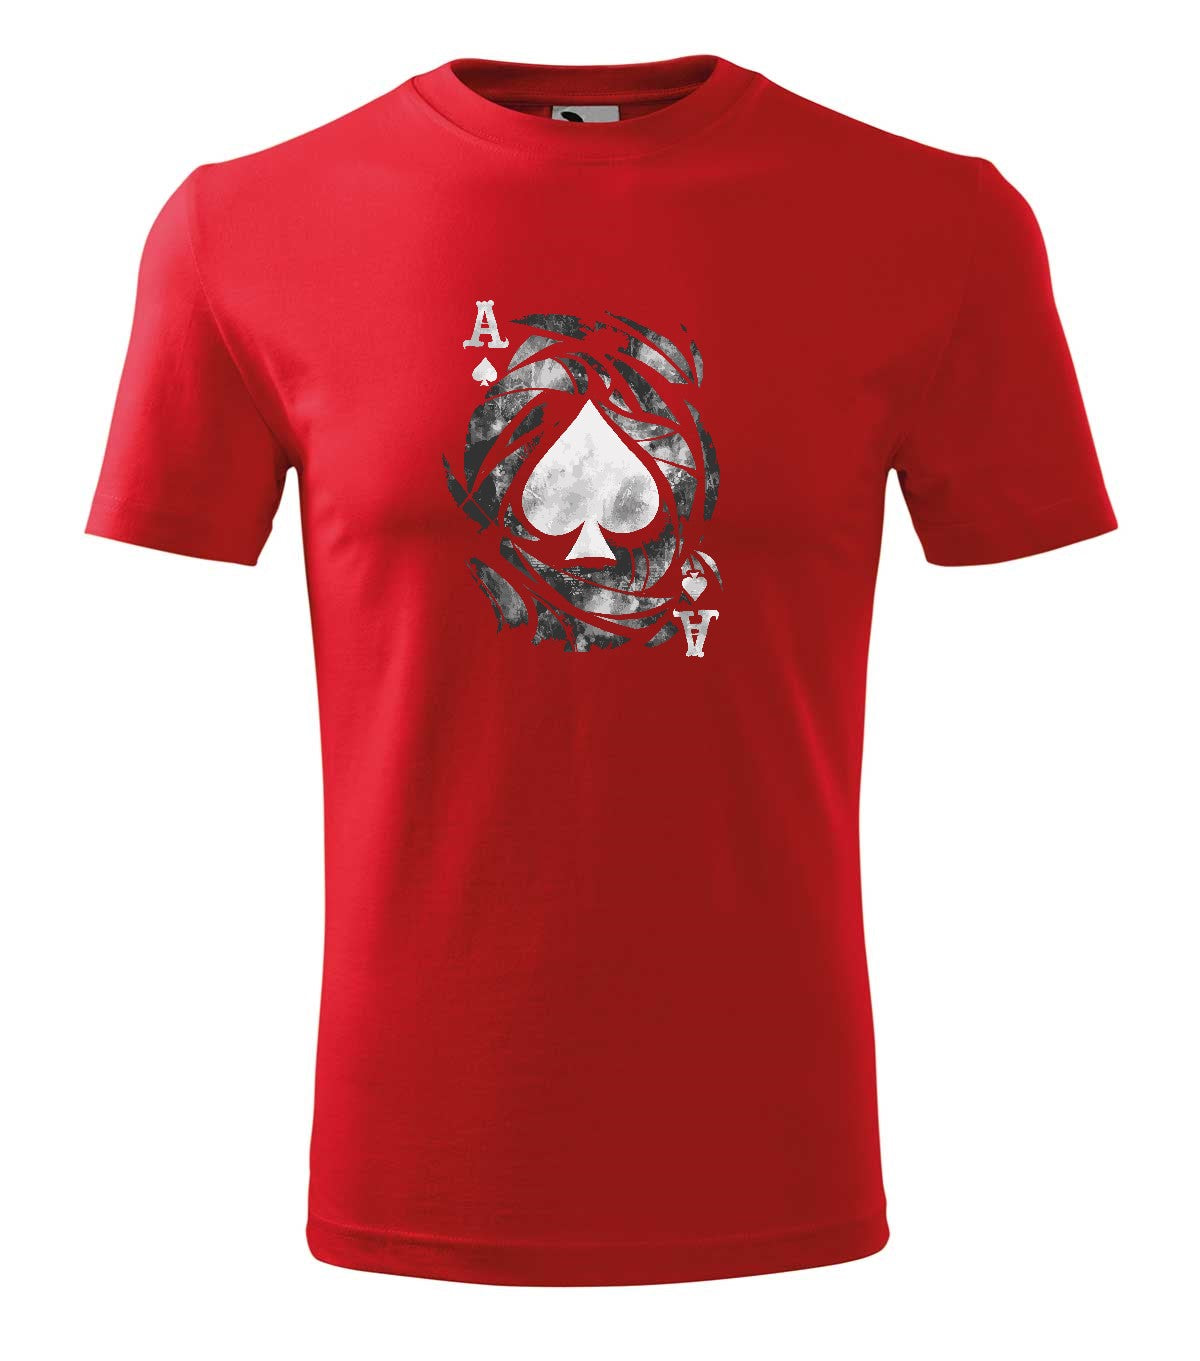 Ace of Spades férfi póló